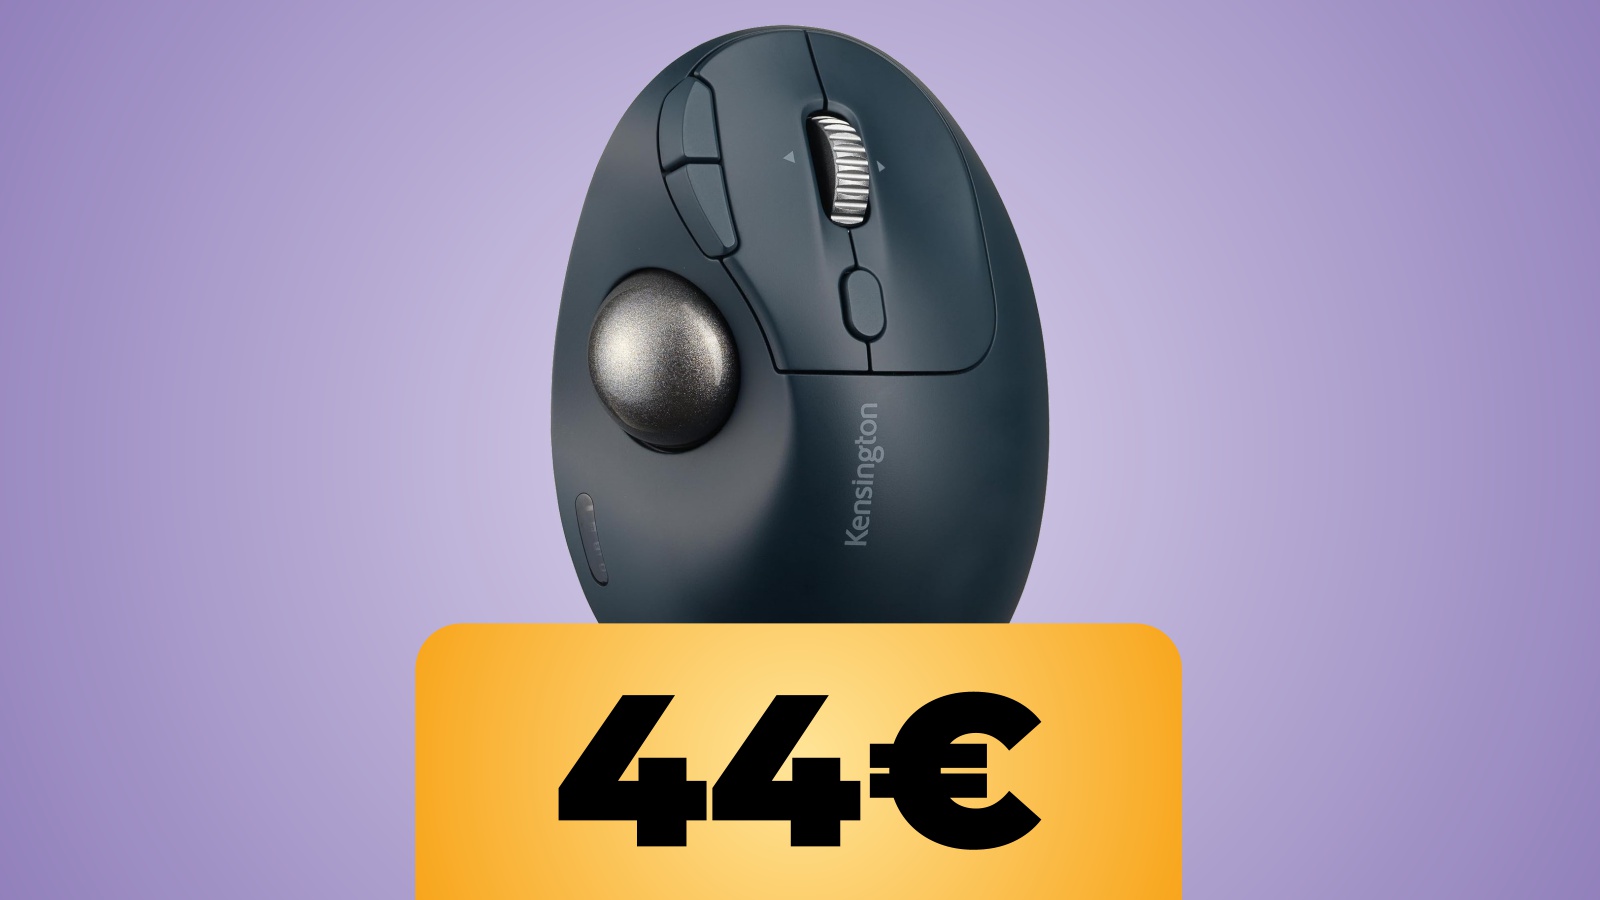 Il mouse Kensington Pro Fit Ergo TB550 con Trackball al prezzo minimo storico su Amazon